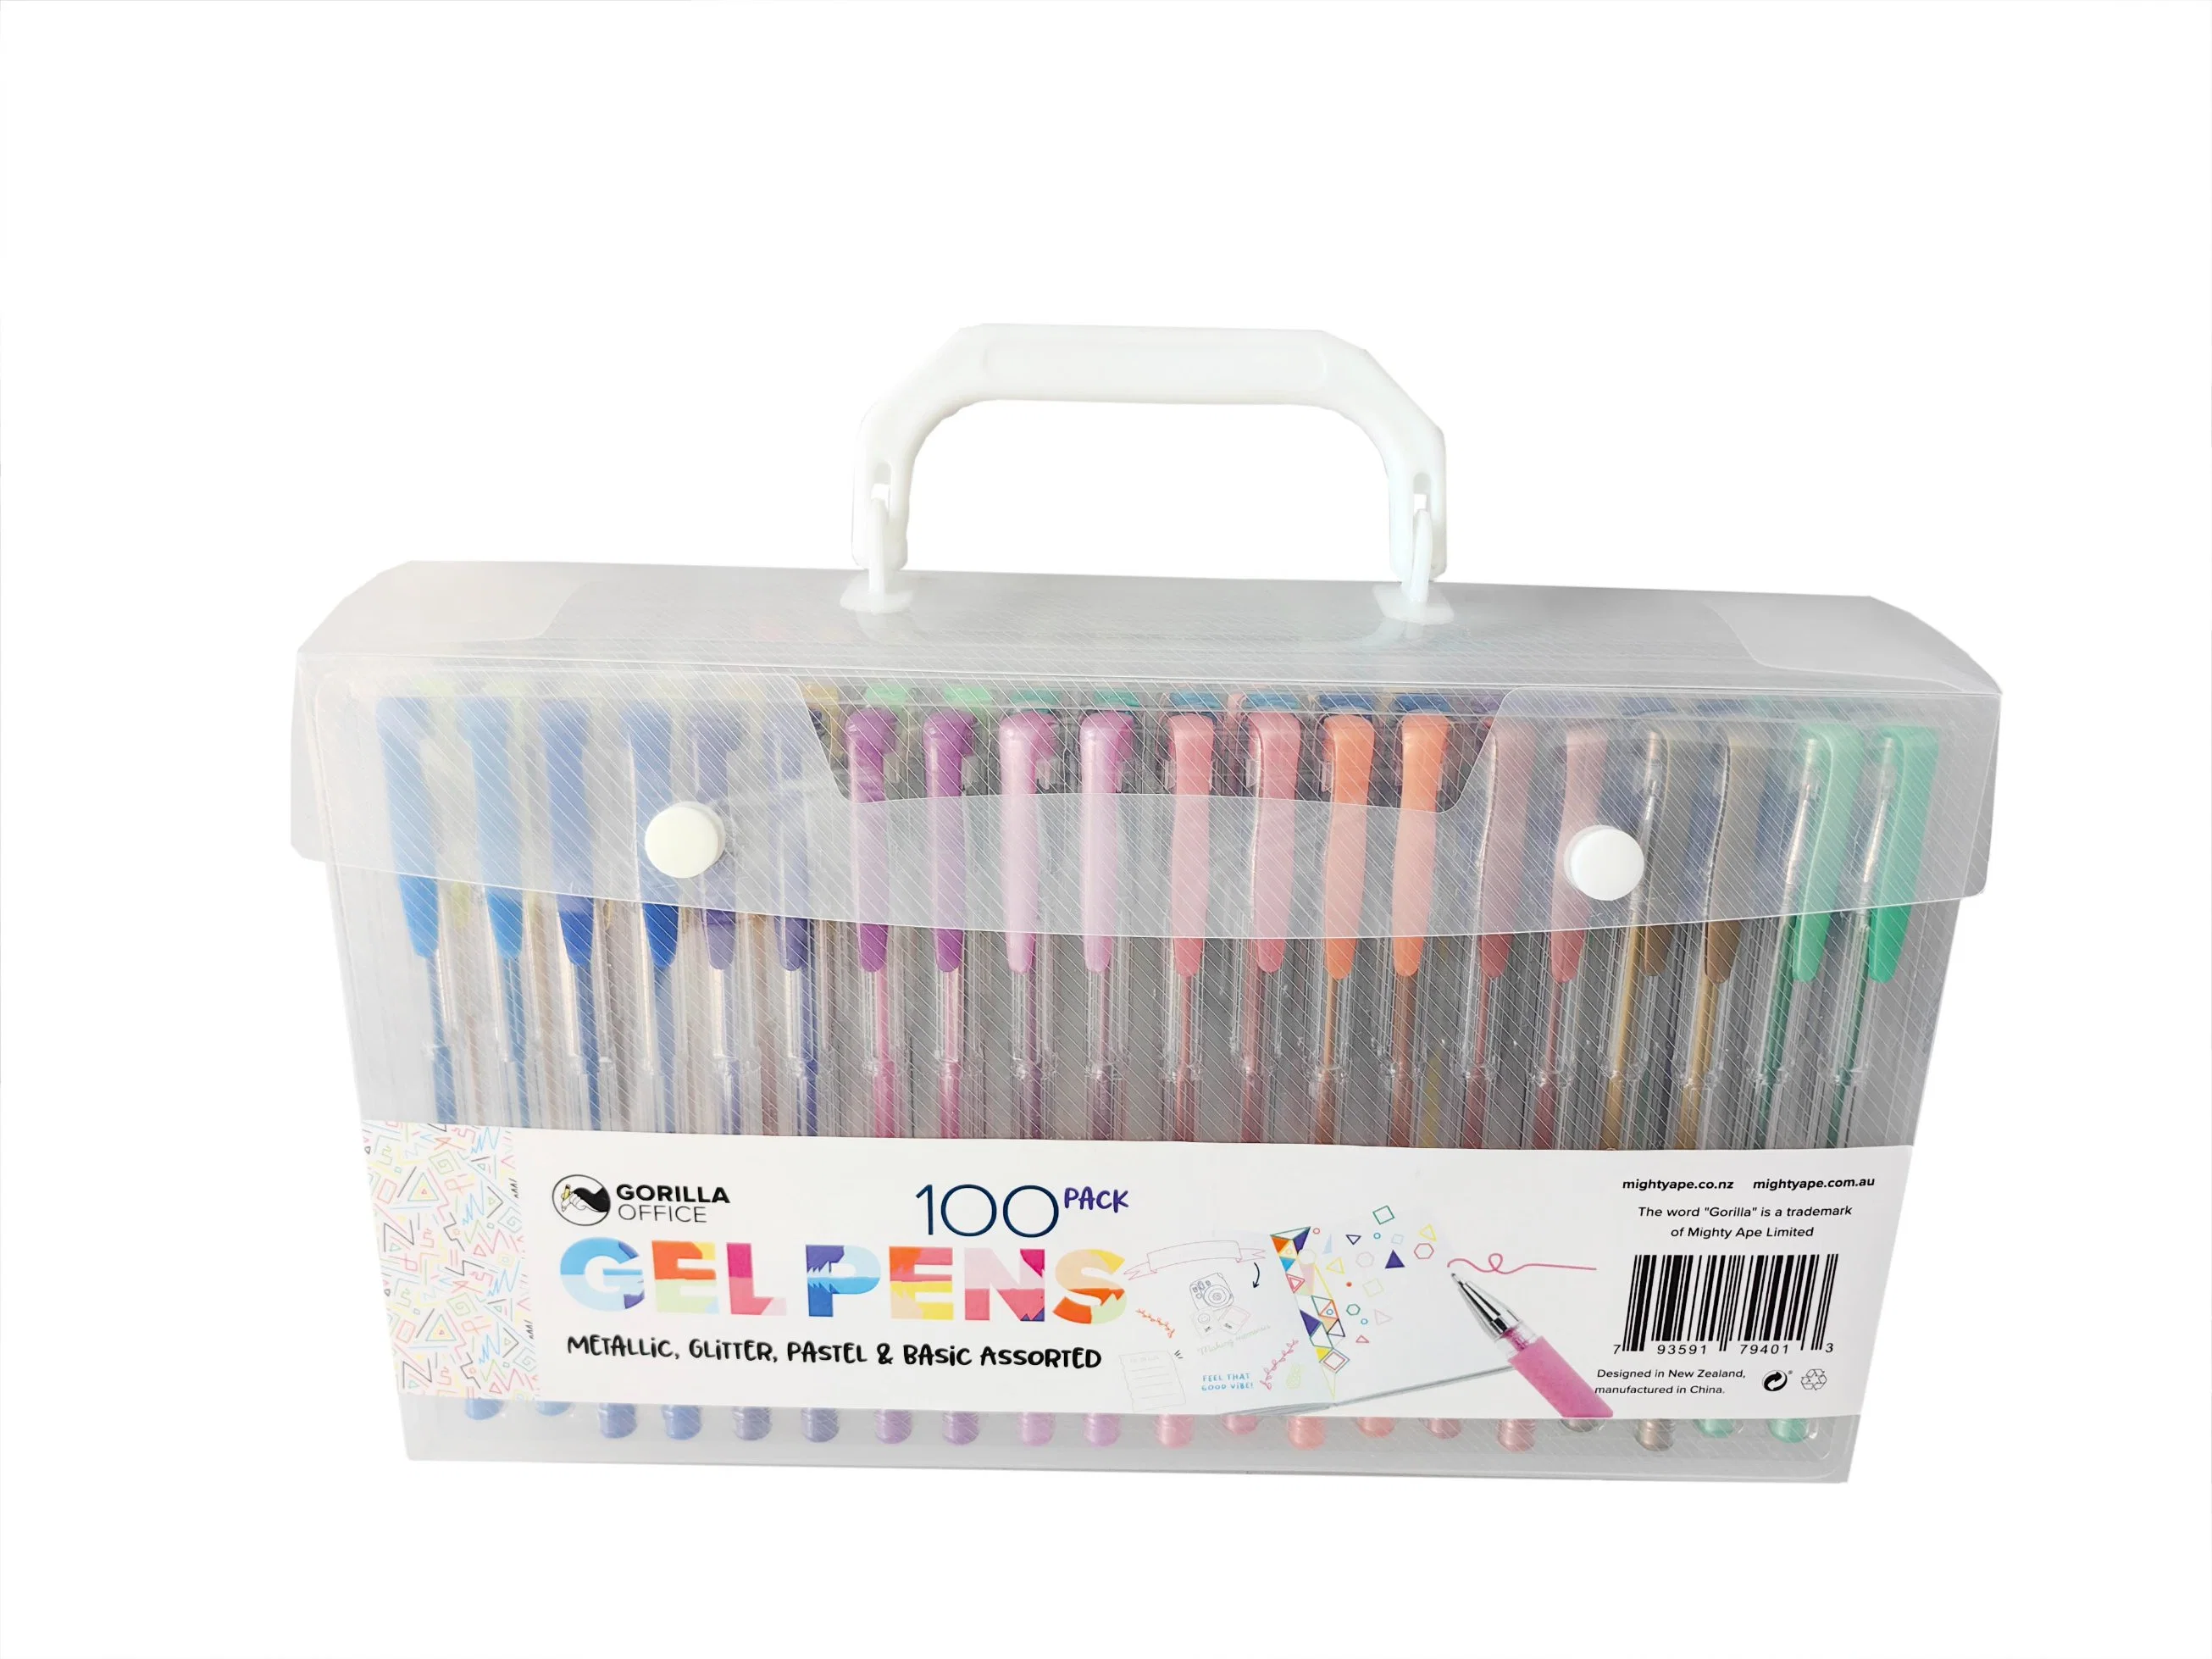 Beste Qualität Gel Pen 100PCS Set Pastell Farbe Gelpen für Schule und Büro